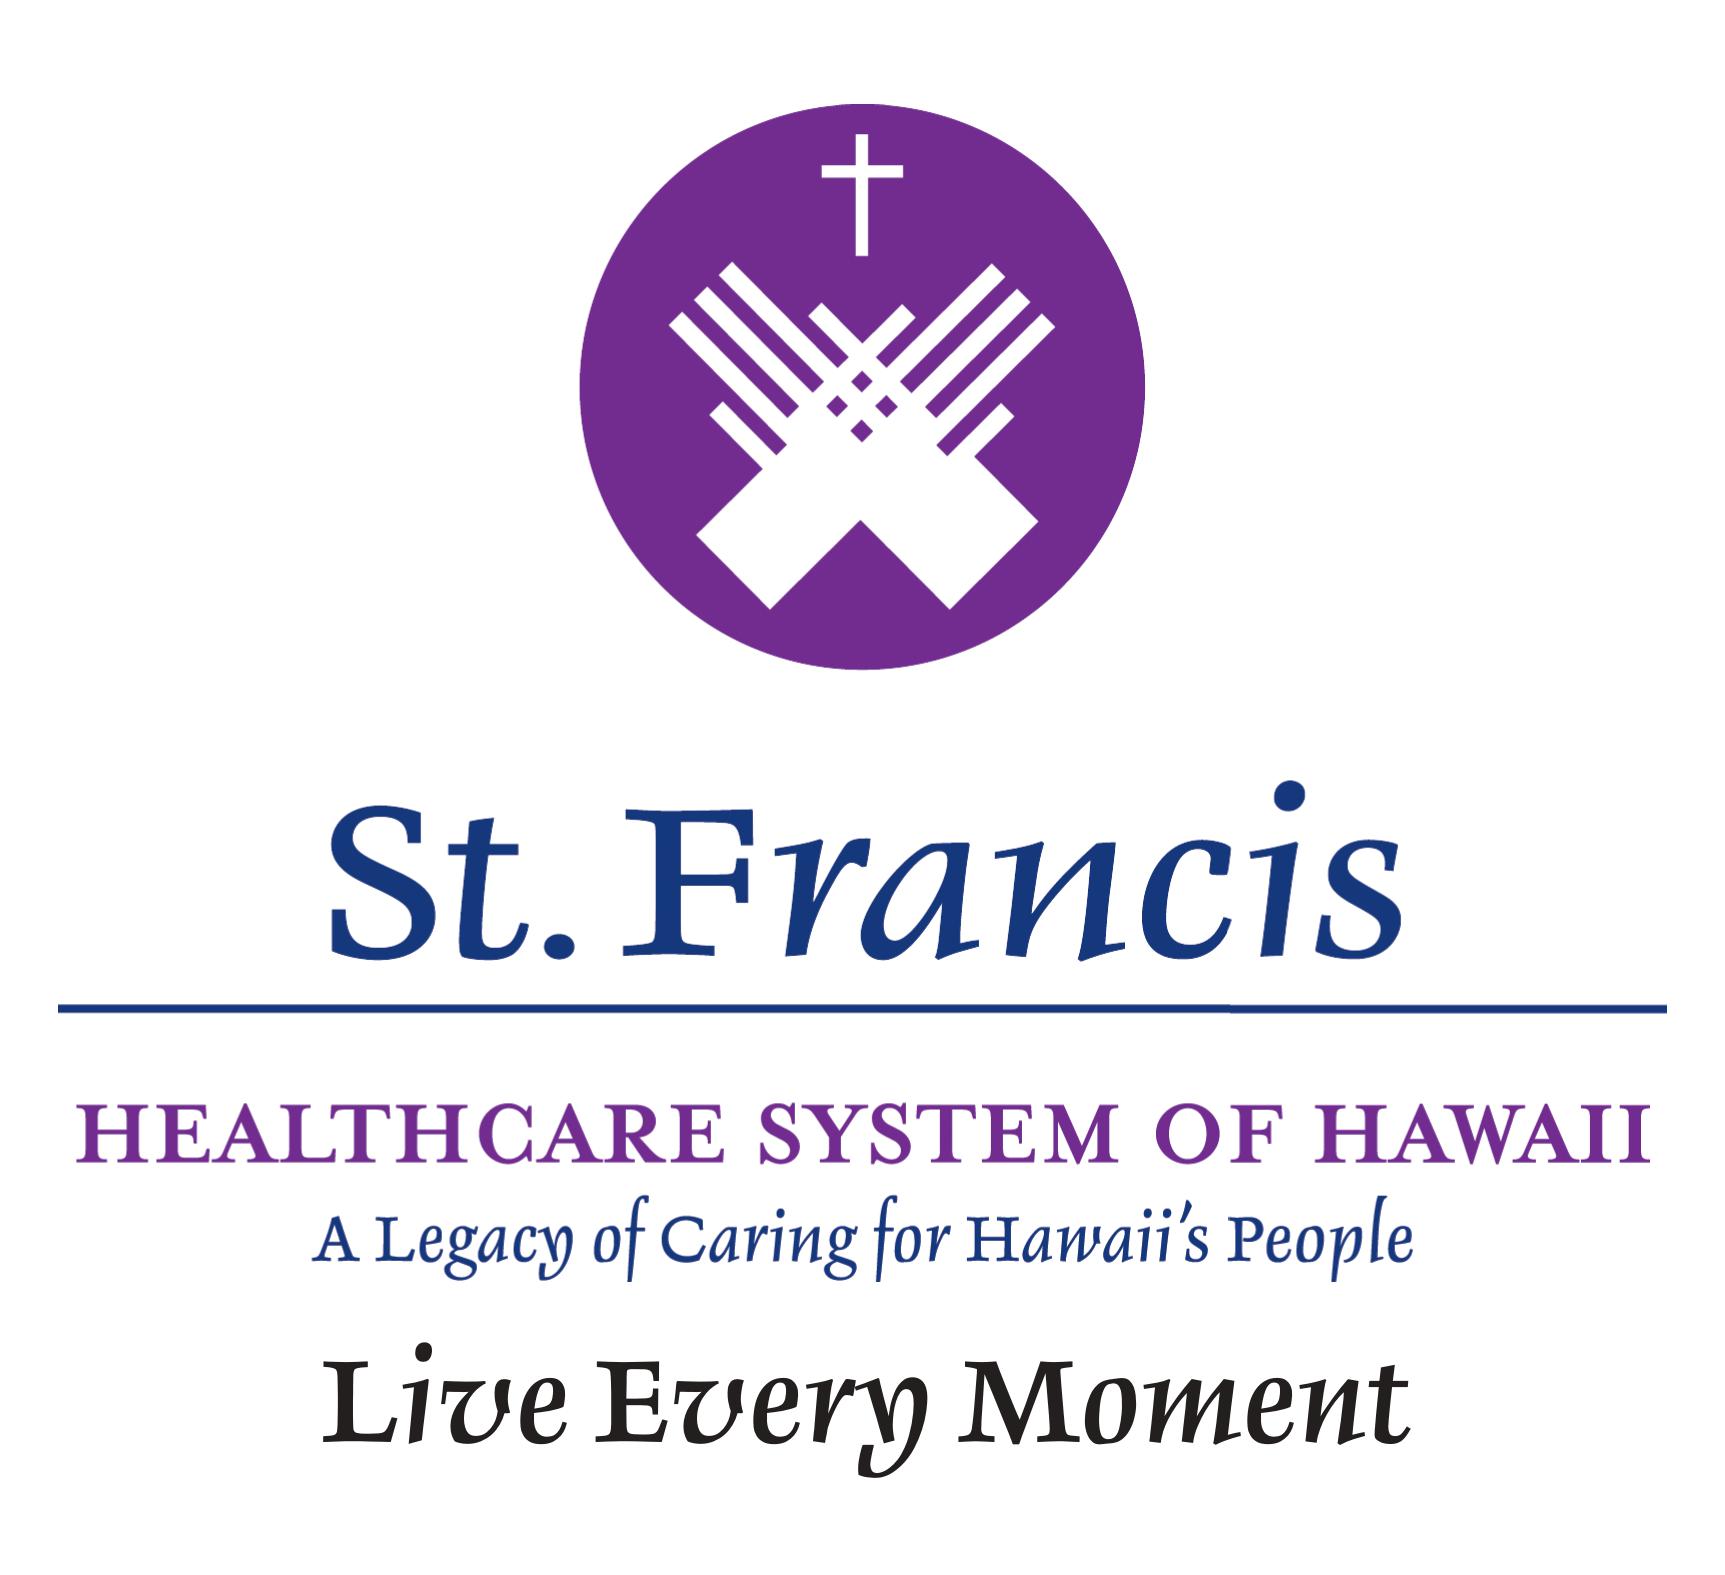 4. Sistema de atención médica St. Francis de Hawaii (Nivel 4)